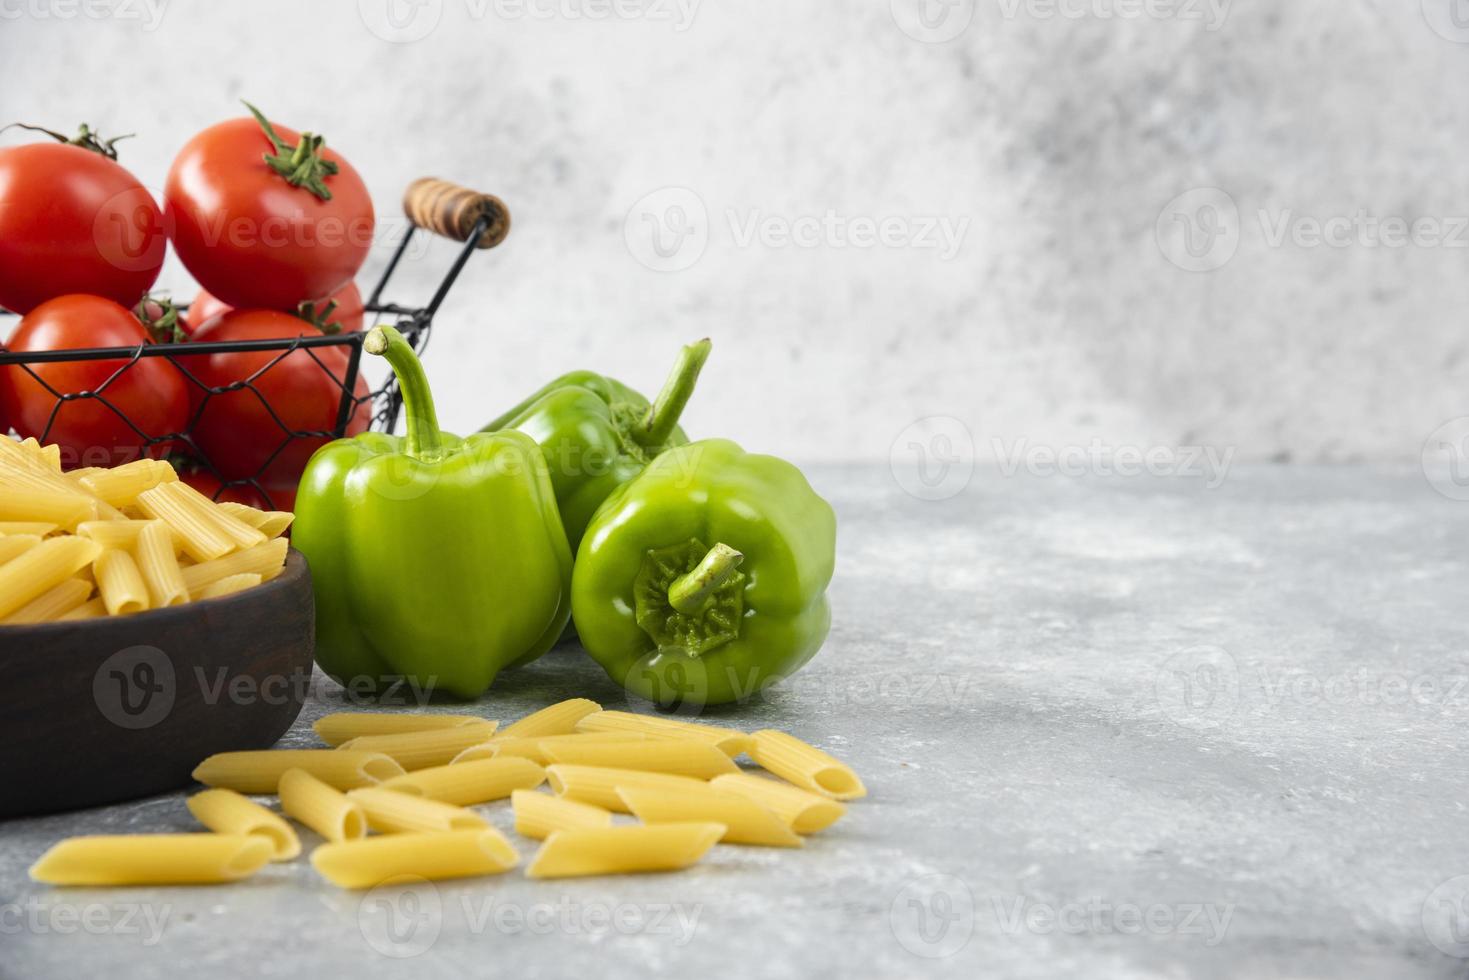 okokt pasta med färska mogna grönsaker placerade på ett stenbord foto